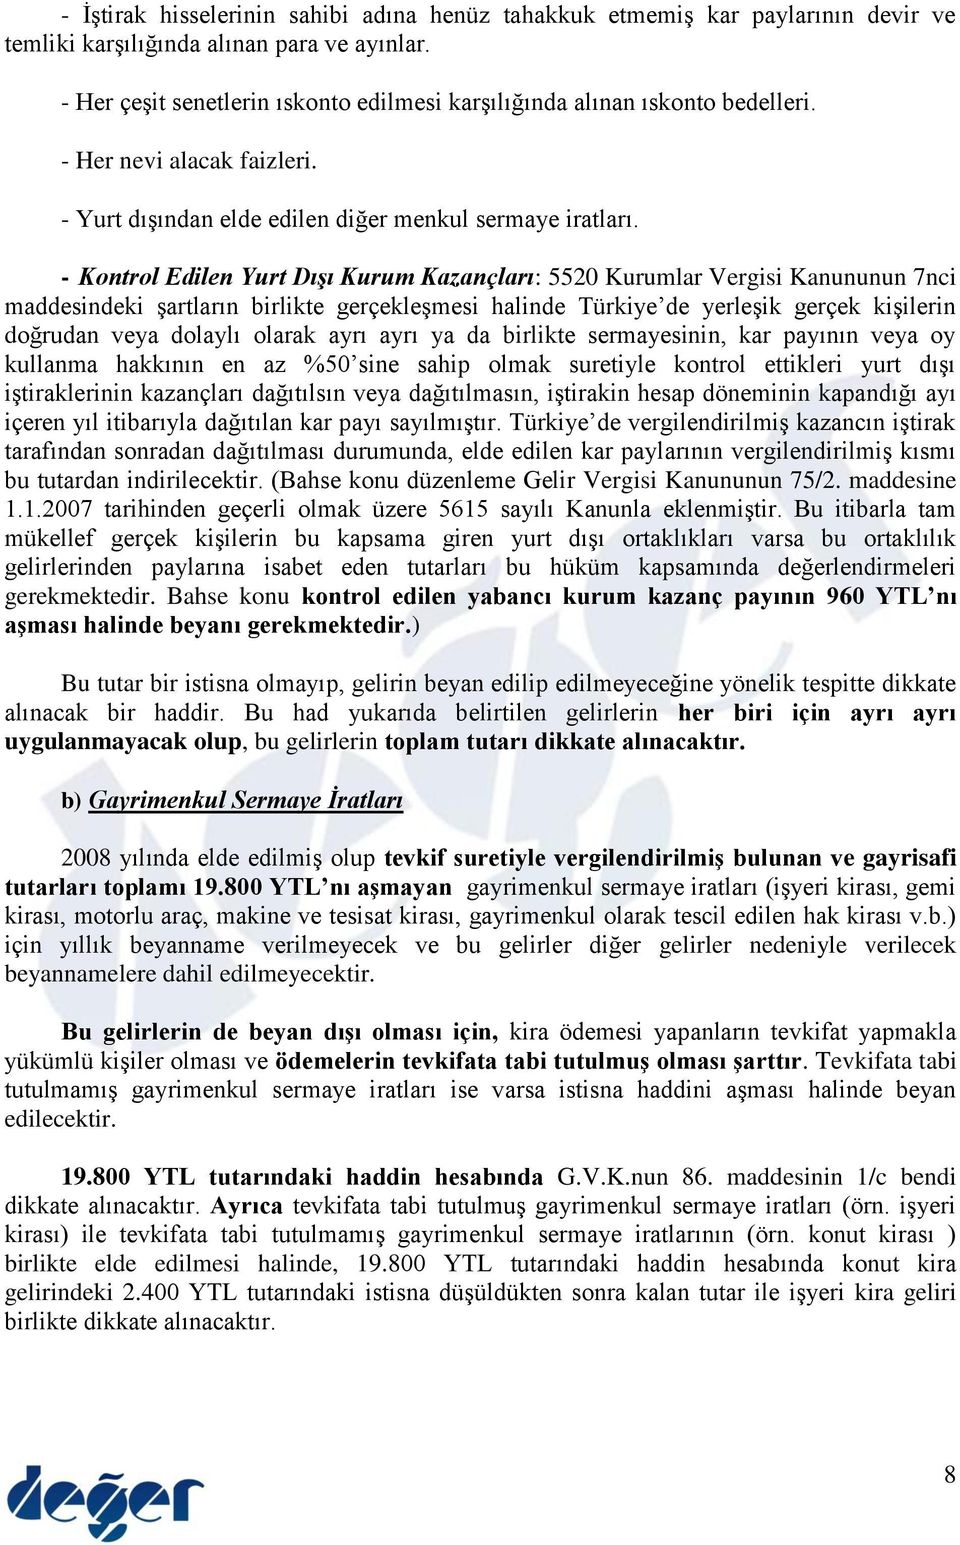 - Kontrol Edilen Yurt Dışı Kurum Kazançları: 5520 Kurumlar Vergisi Kanununun 7nci maddesindeki şartların birlikte gerçekleşmesi halinde Türkiye de yerleşik gerçek kişilerin doğrudan veya dolaylı